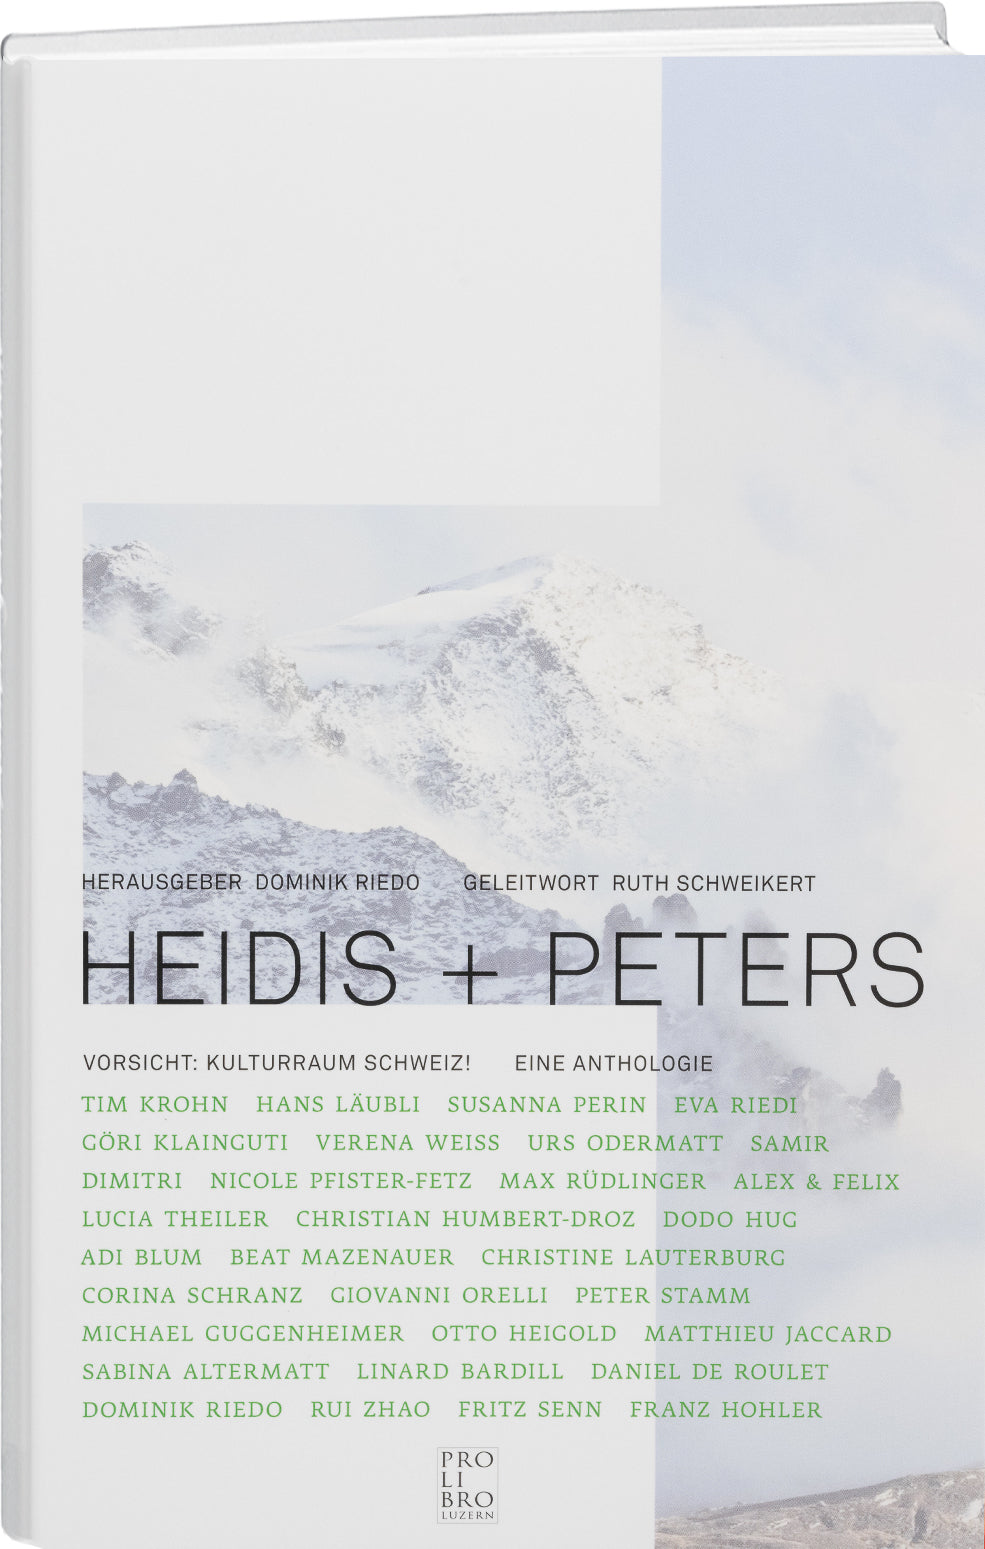 Dominik Riedo: Heidis + Peters - prolibro.ch